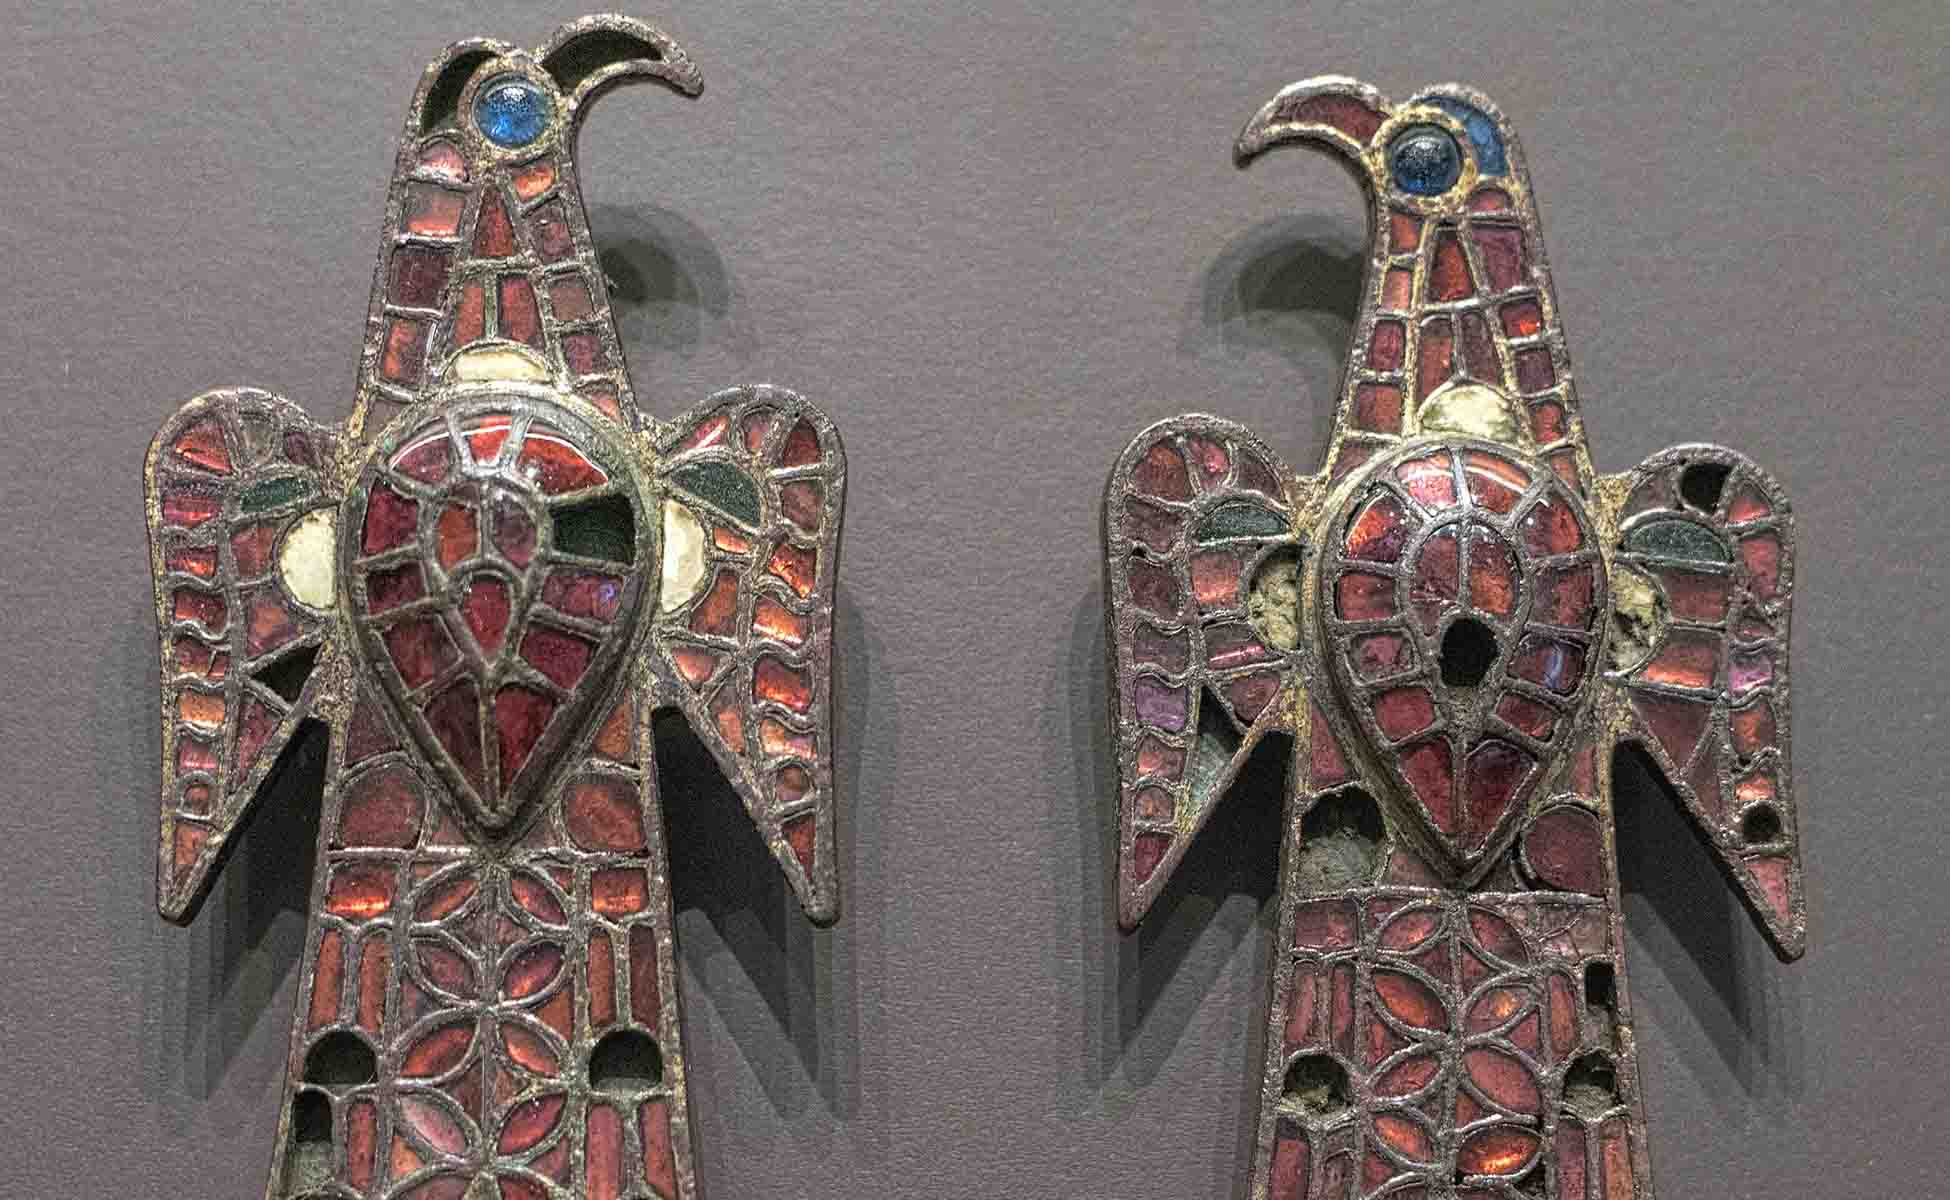 Egyptian Jewellery